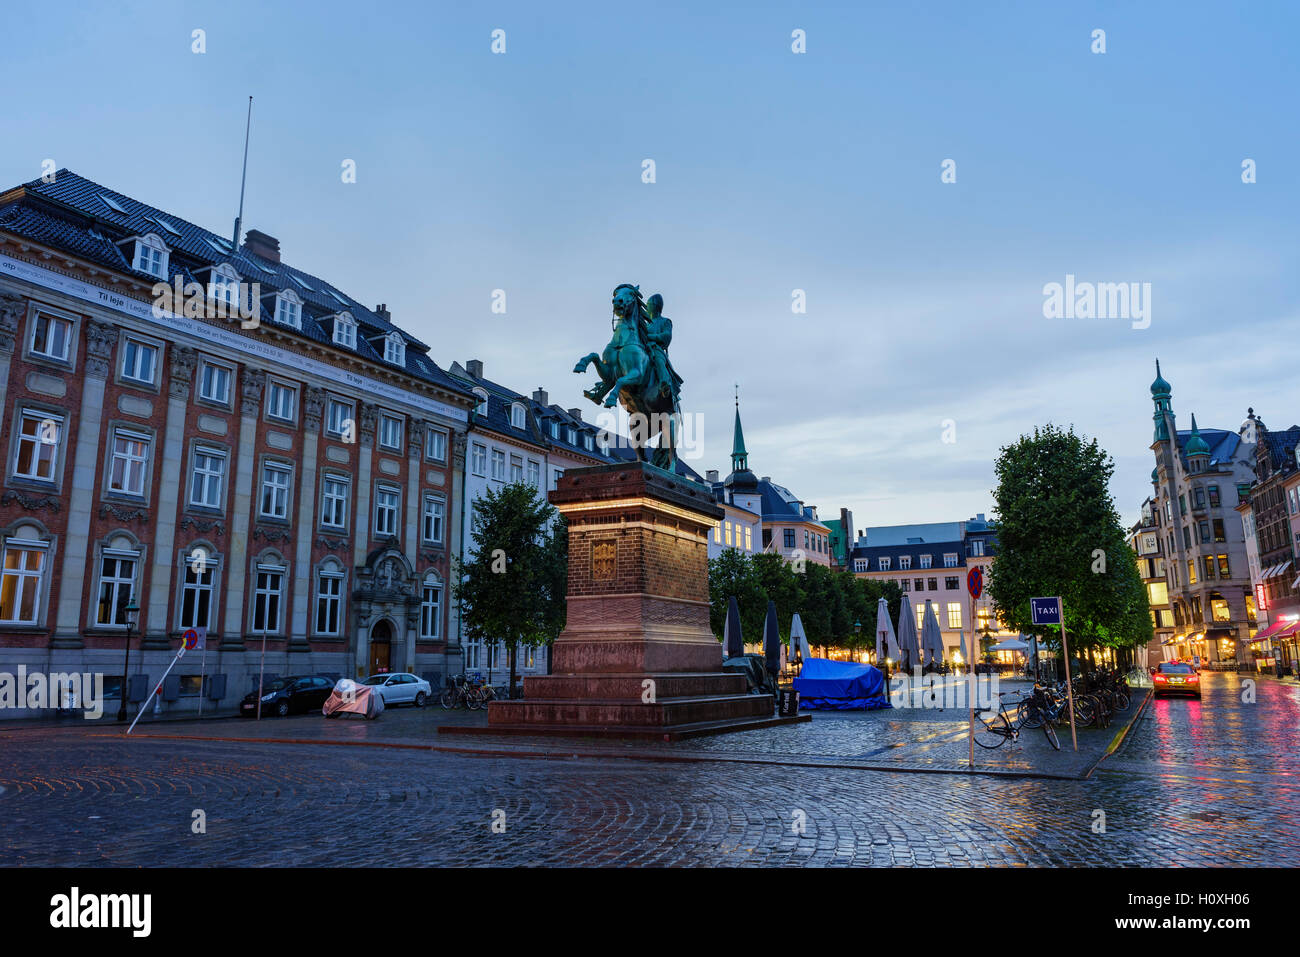 The historical statue of Absalon, Copenhagen, Denmark at night Stock Photo